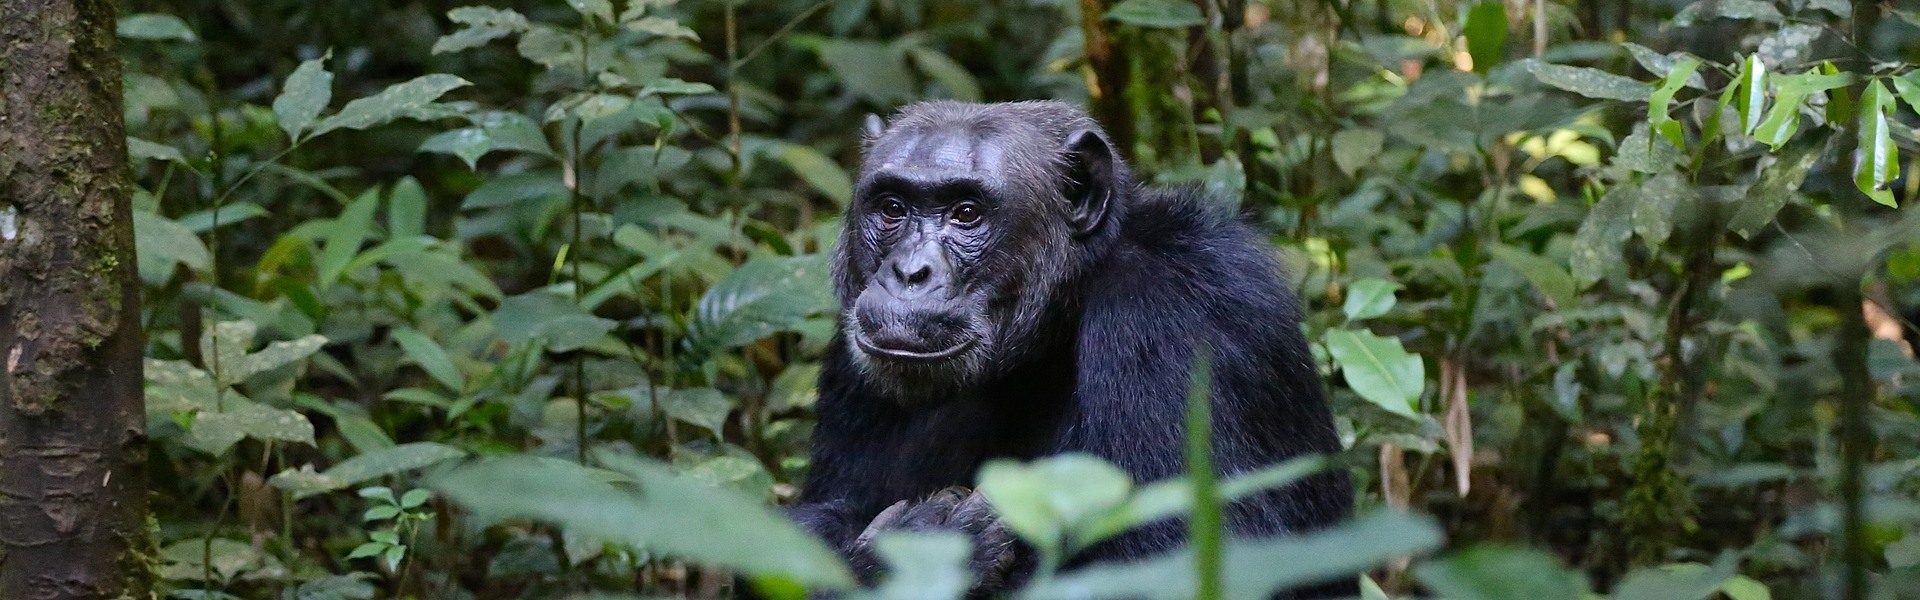 Uganda Dschungel mit Gorilla